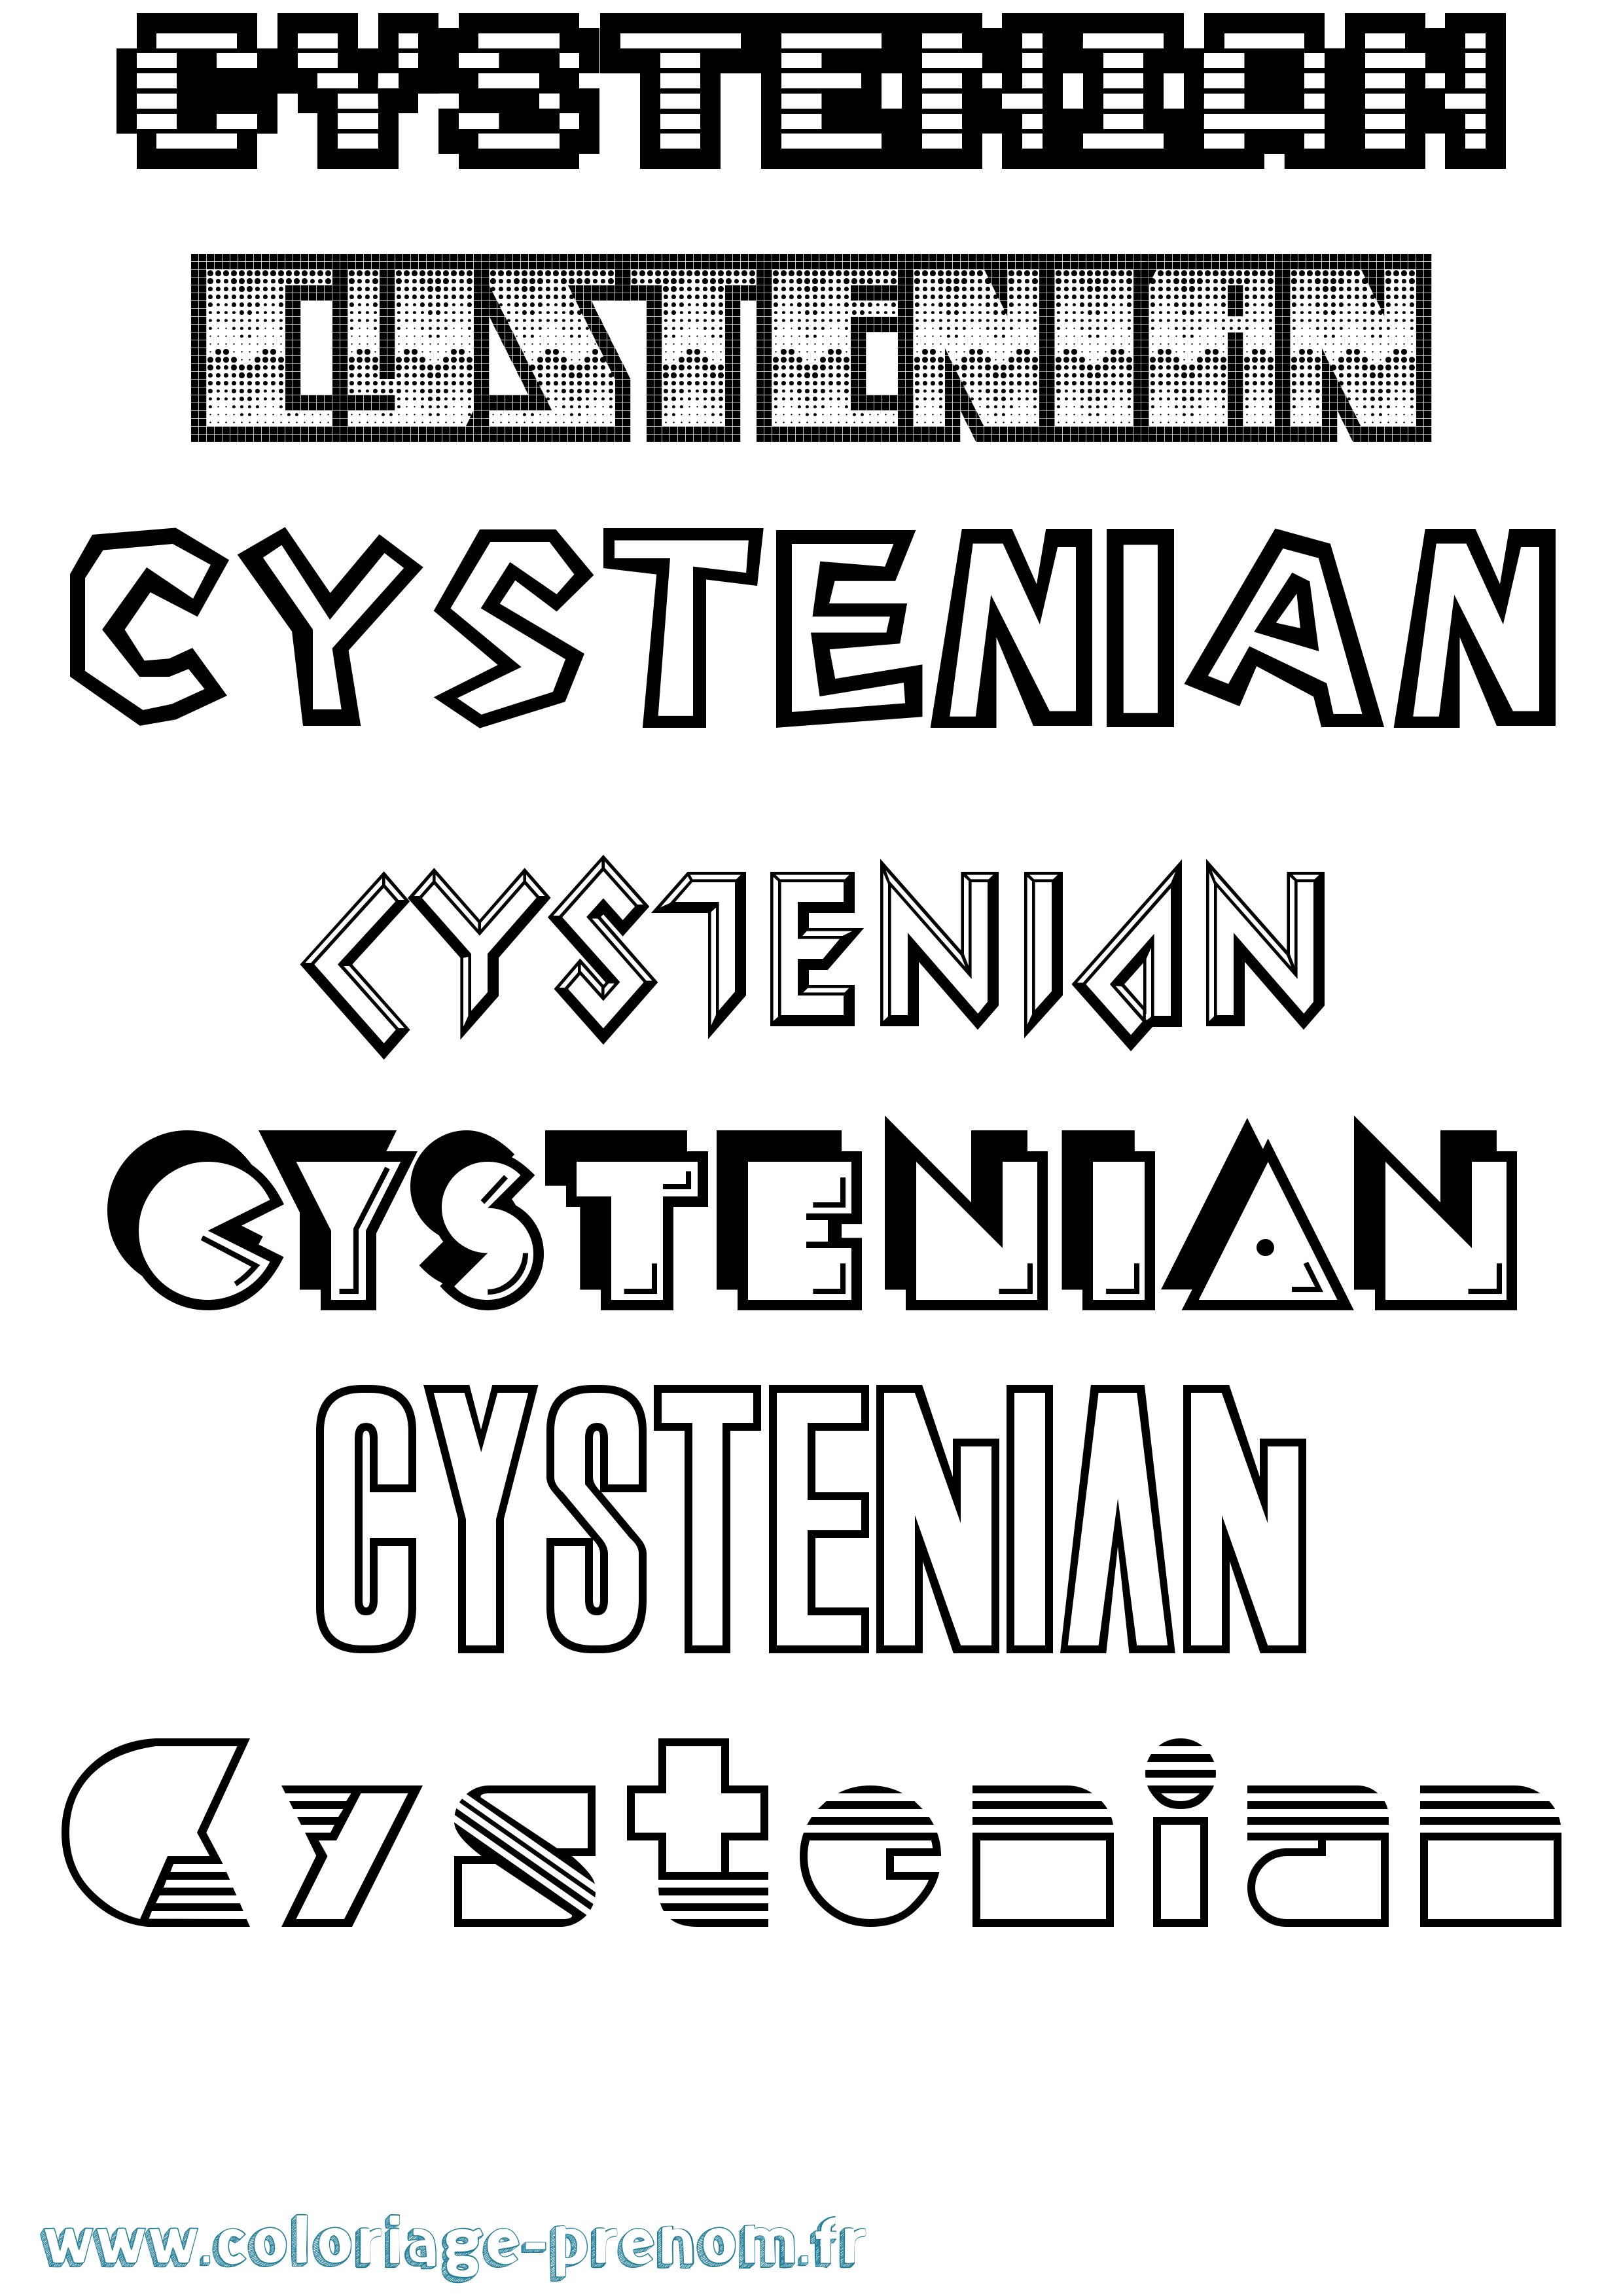 Coloriage prénom Cystenian Jeux Vidéos